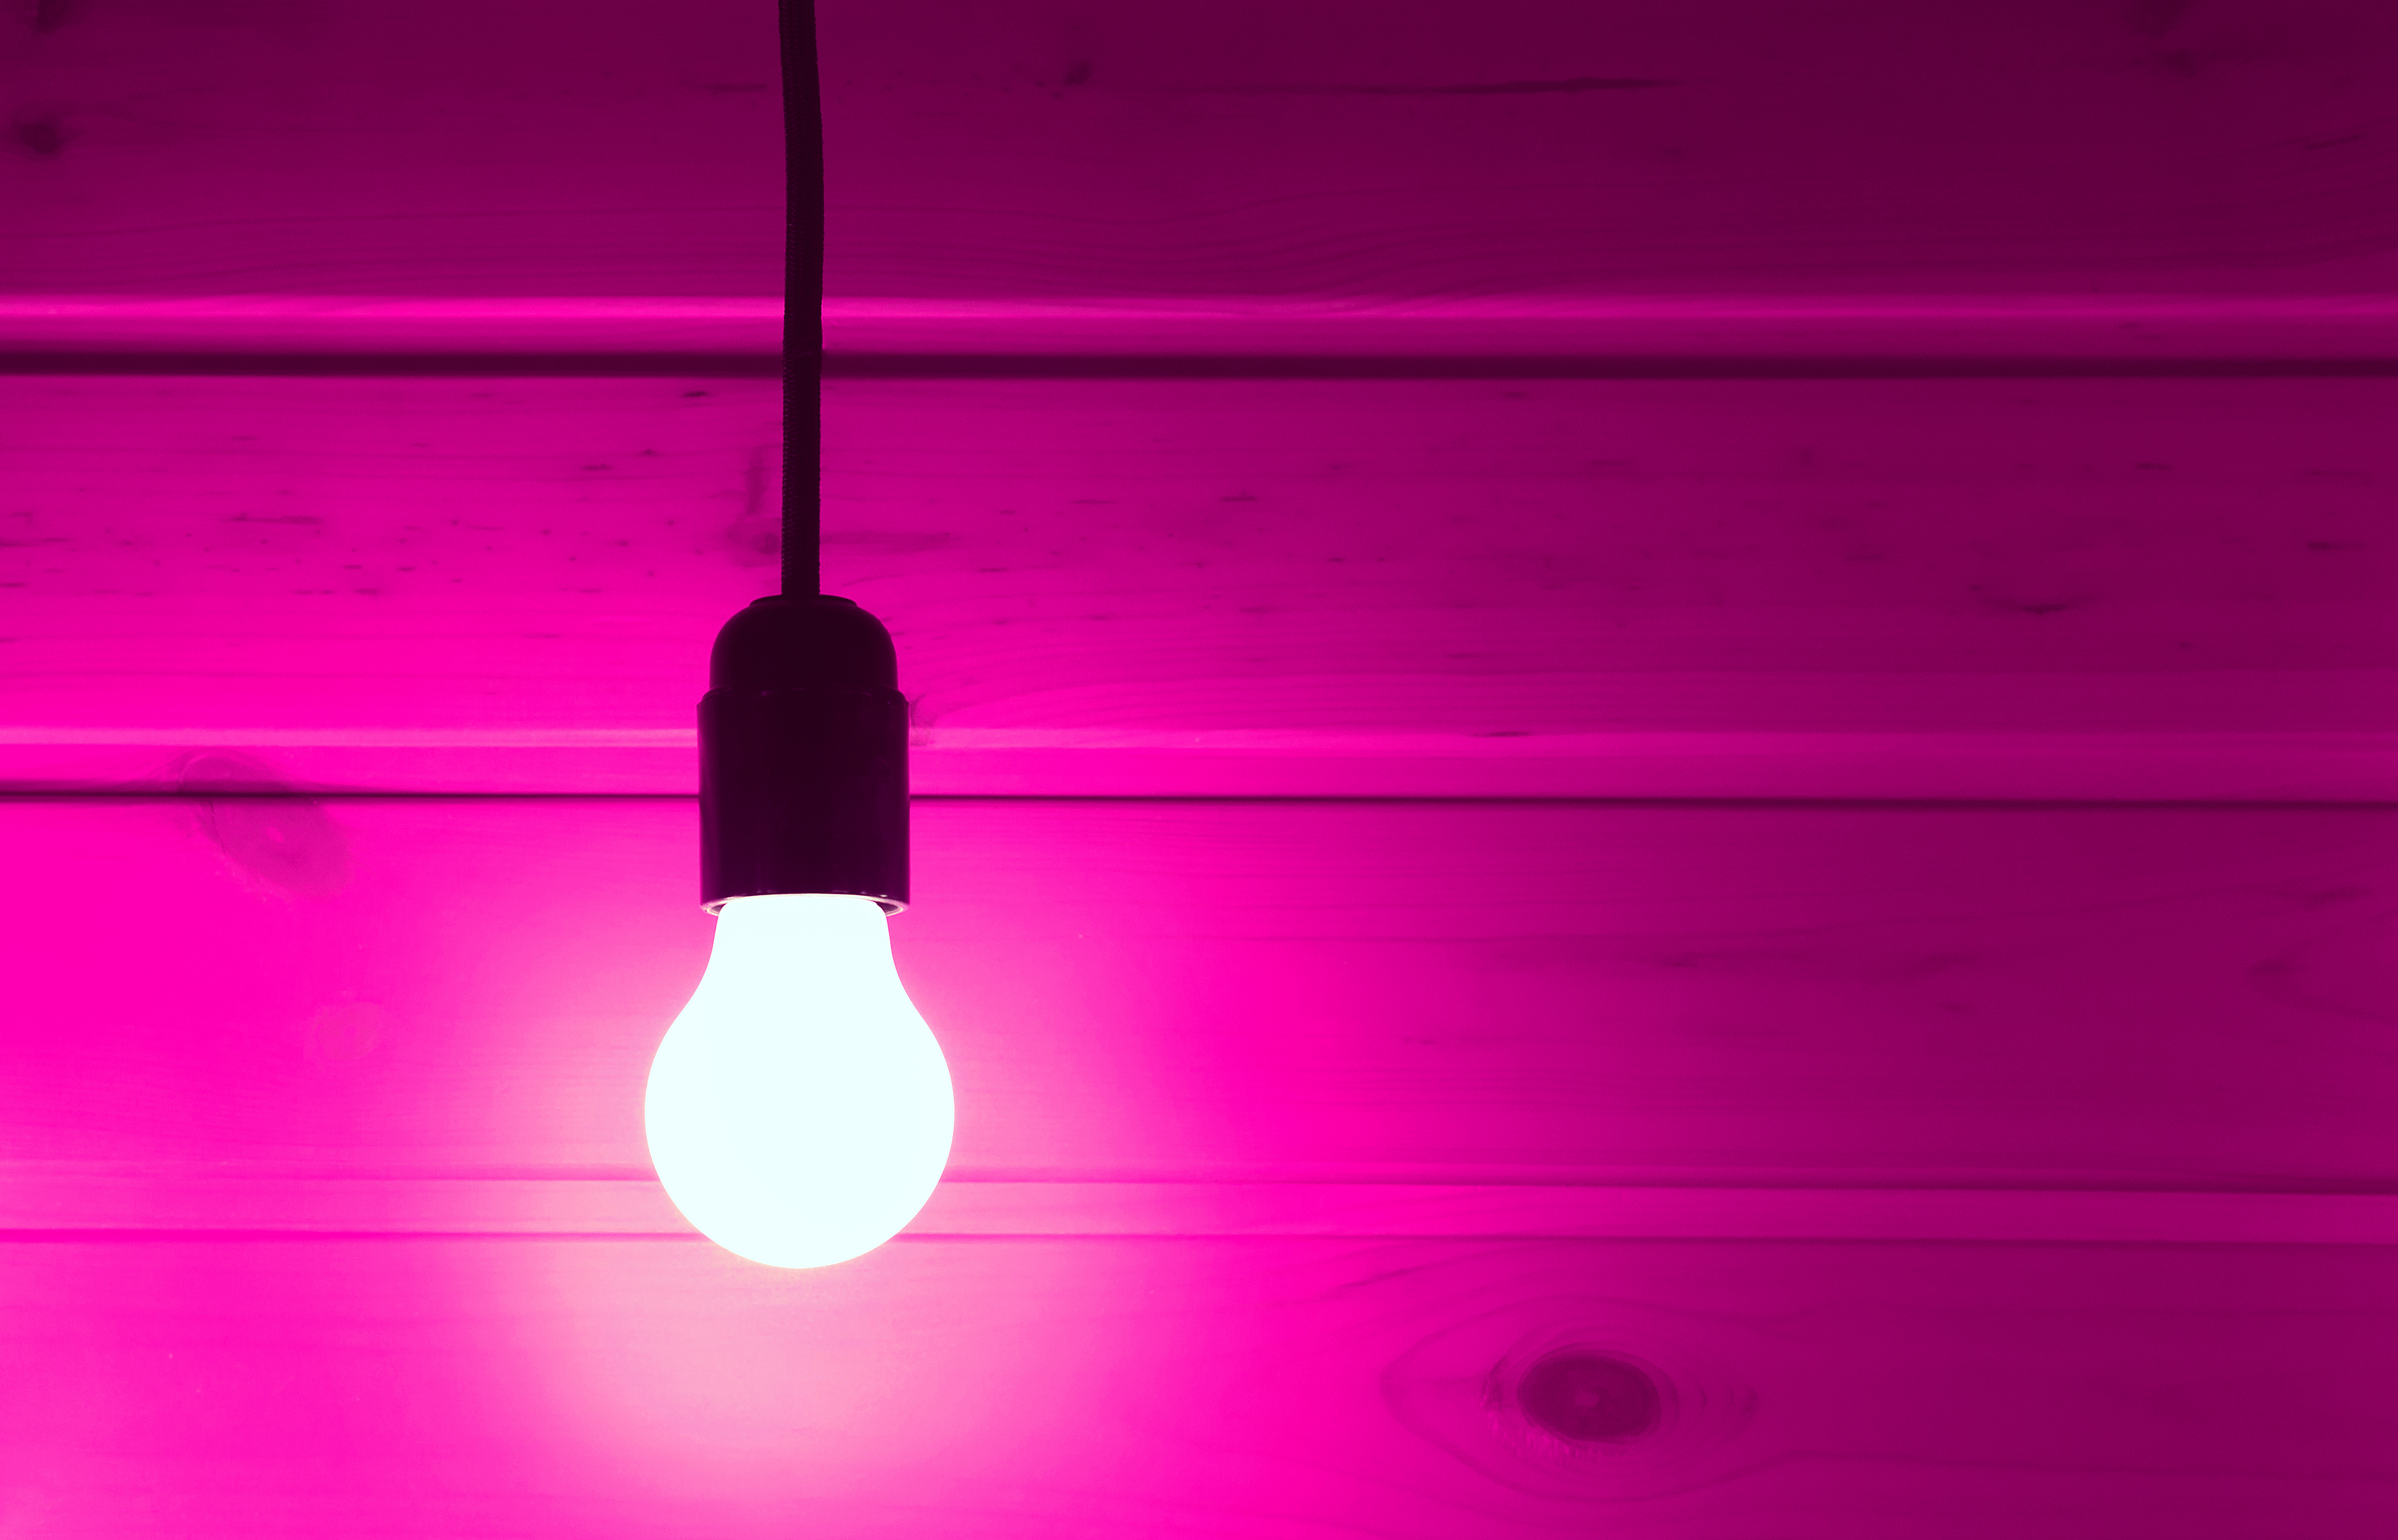 A pink light bulb | Source: Shutterstock